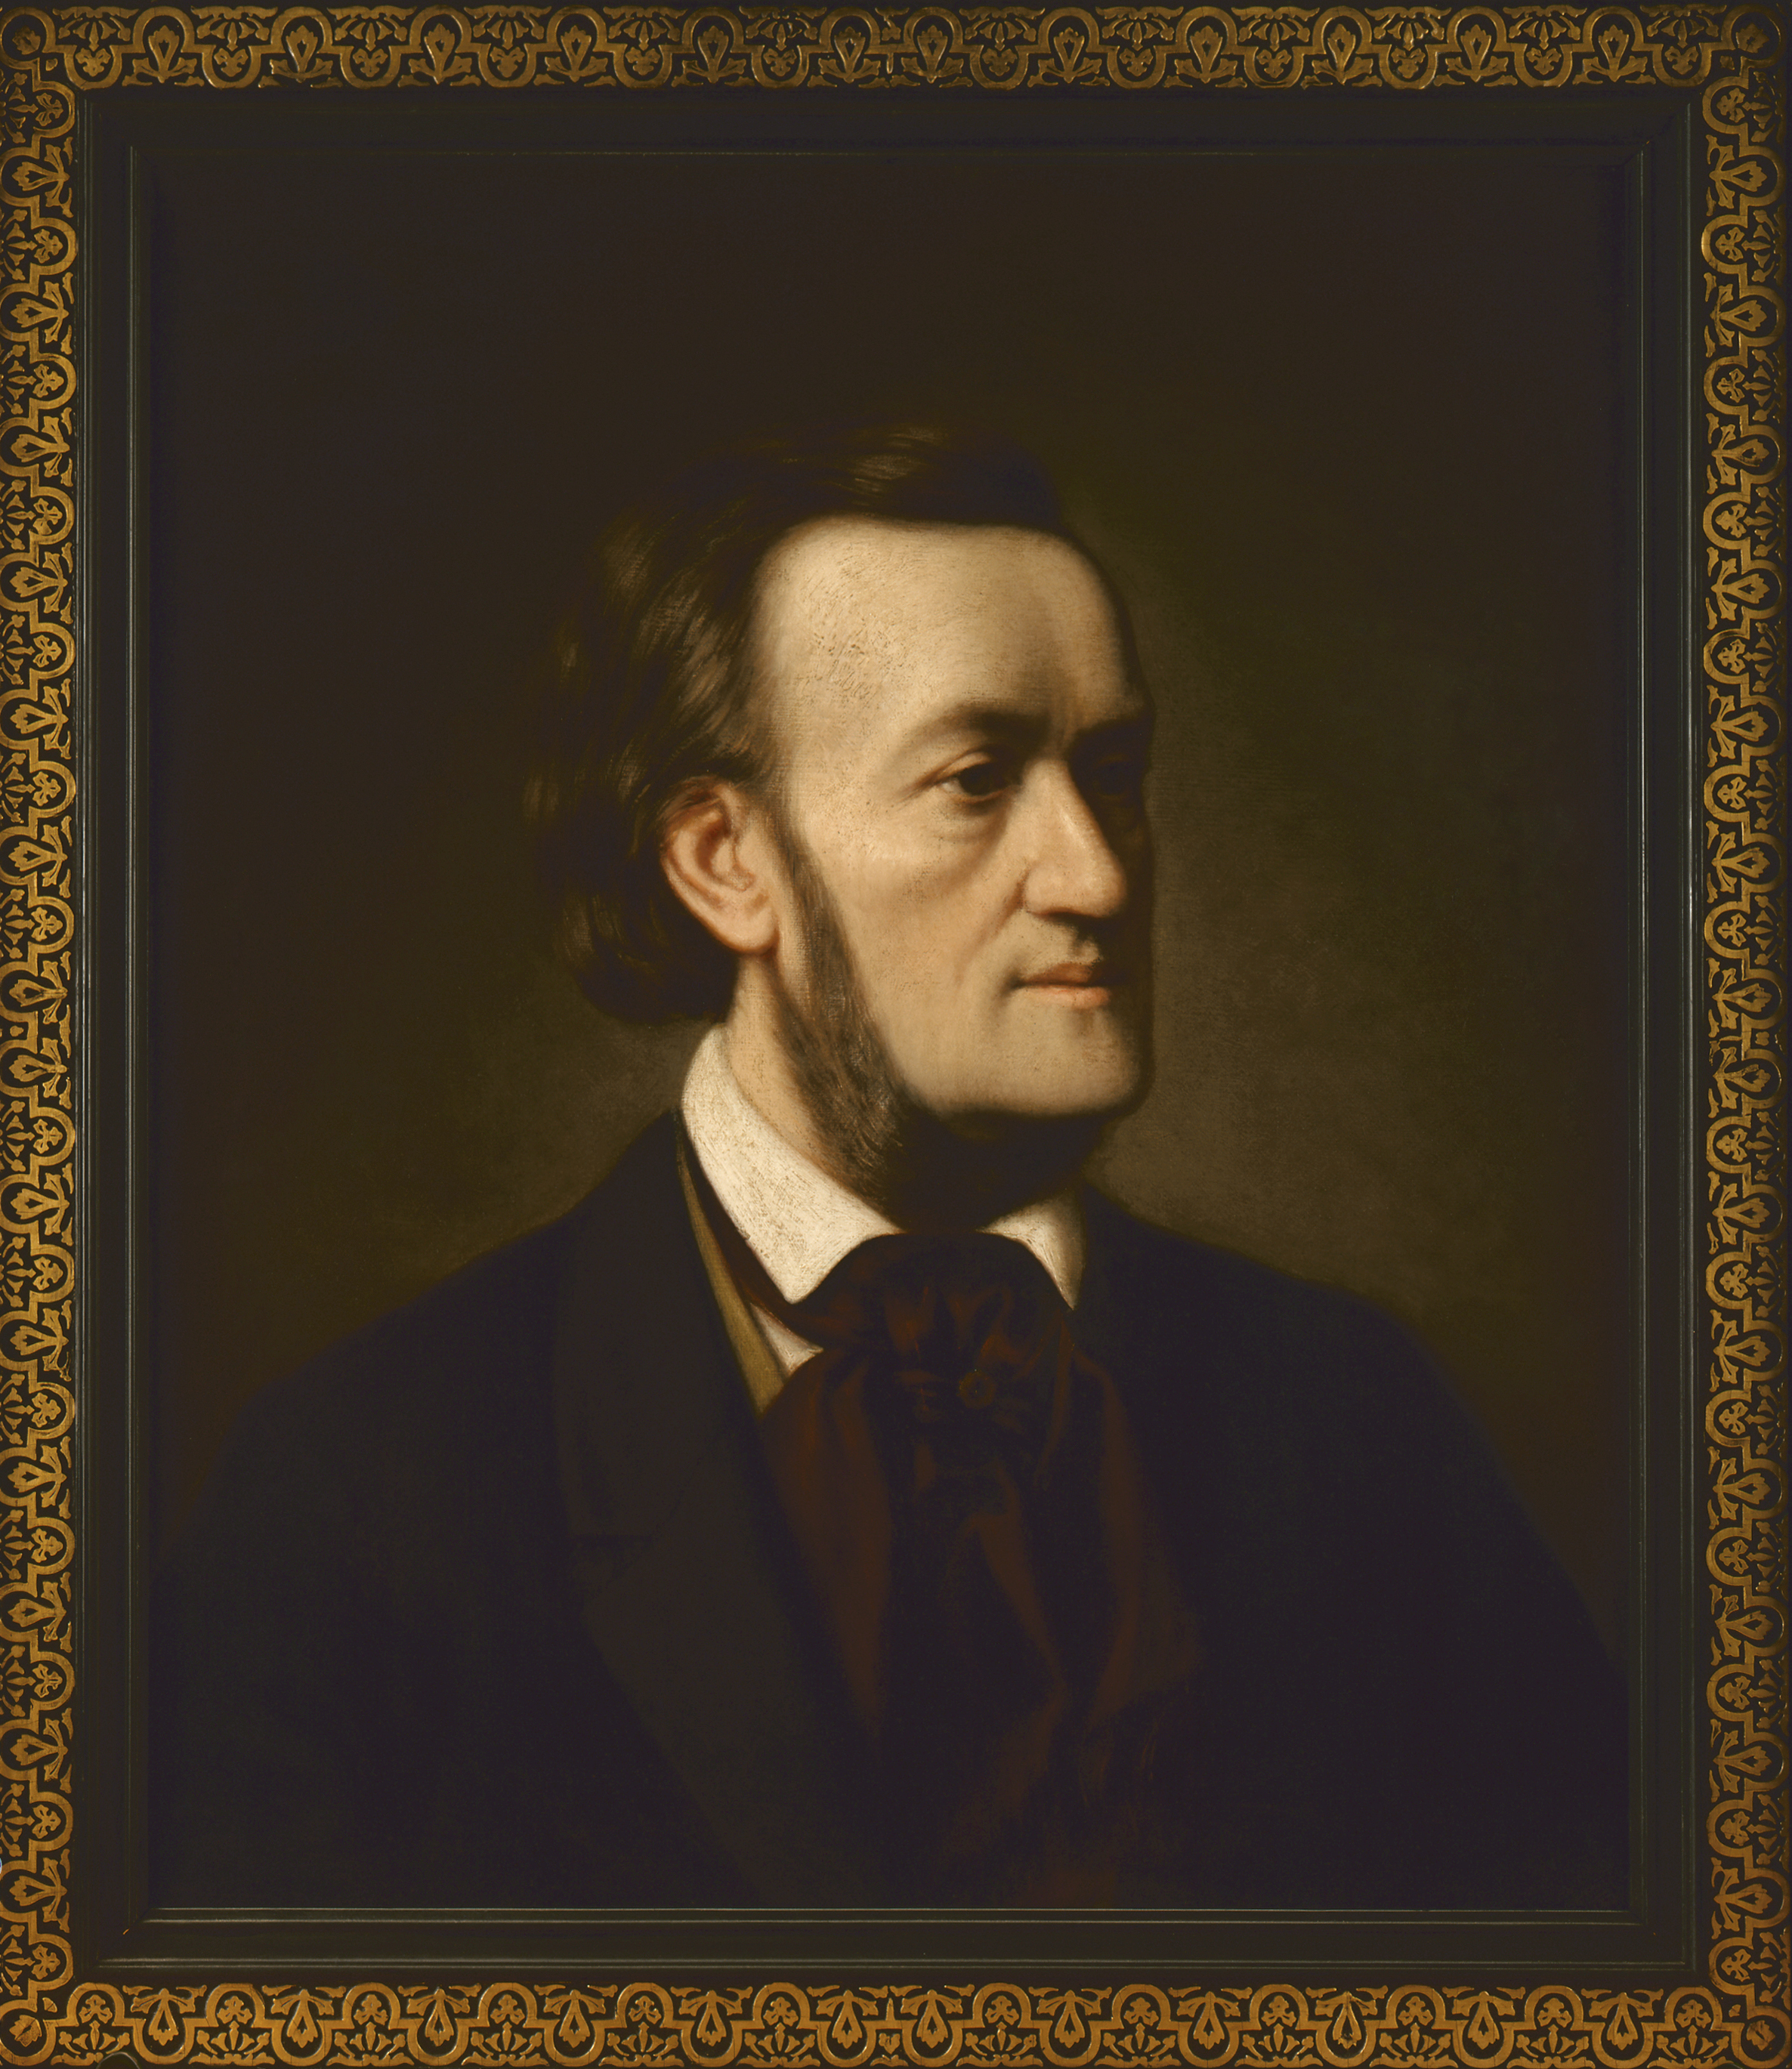 Richard Wagner, Gemälde von Cäsar Willich, um 1862, Reiss-Engelhorn-Museen Mannheim